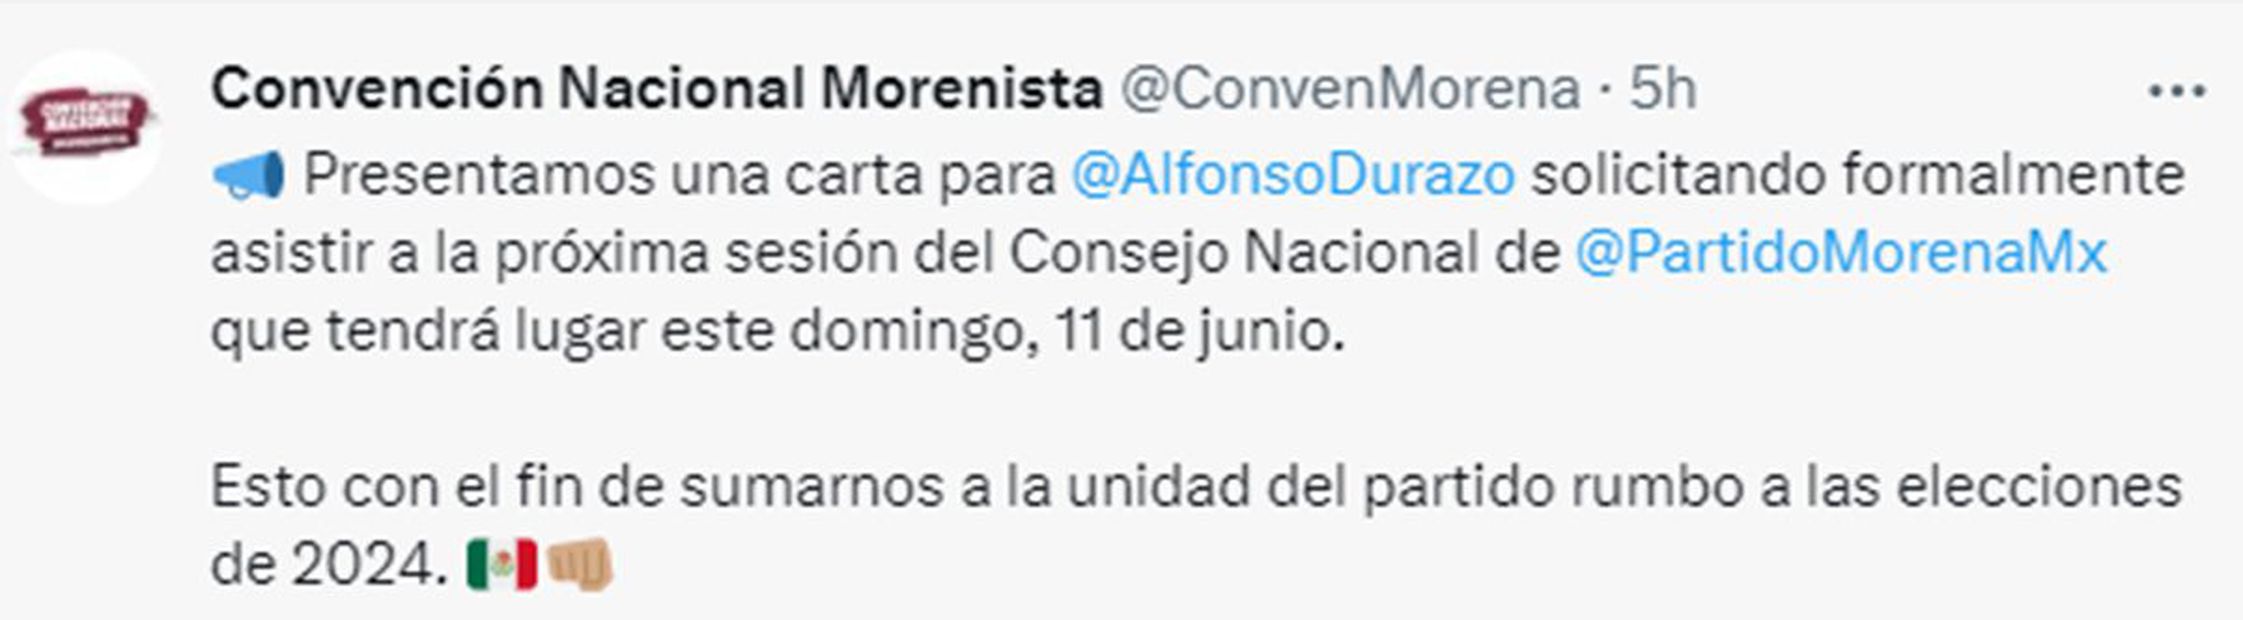 Tuit Convención Nacional Morenista Foto: Twitter @ConvenMorena